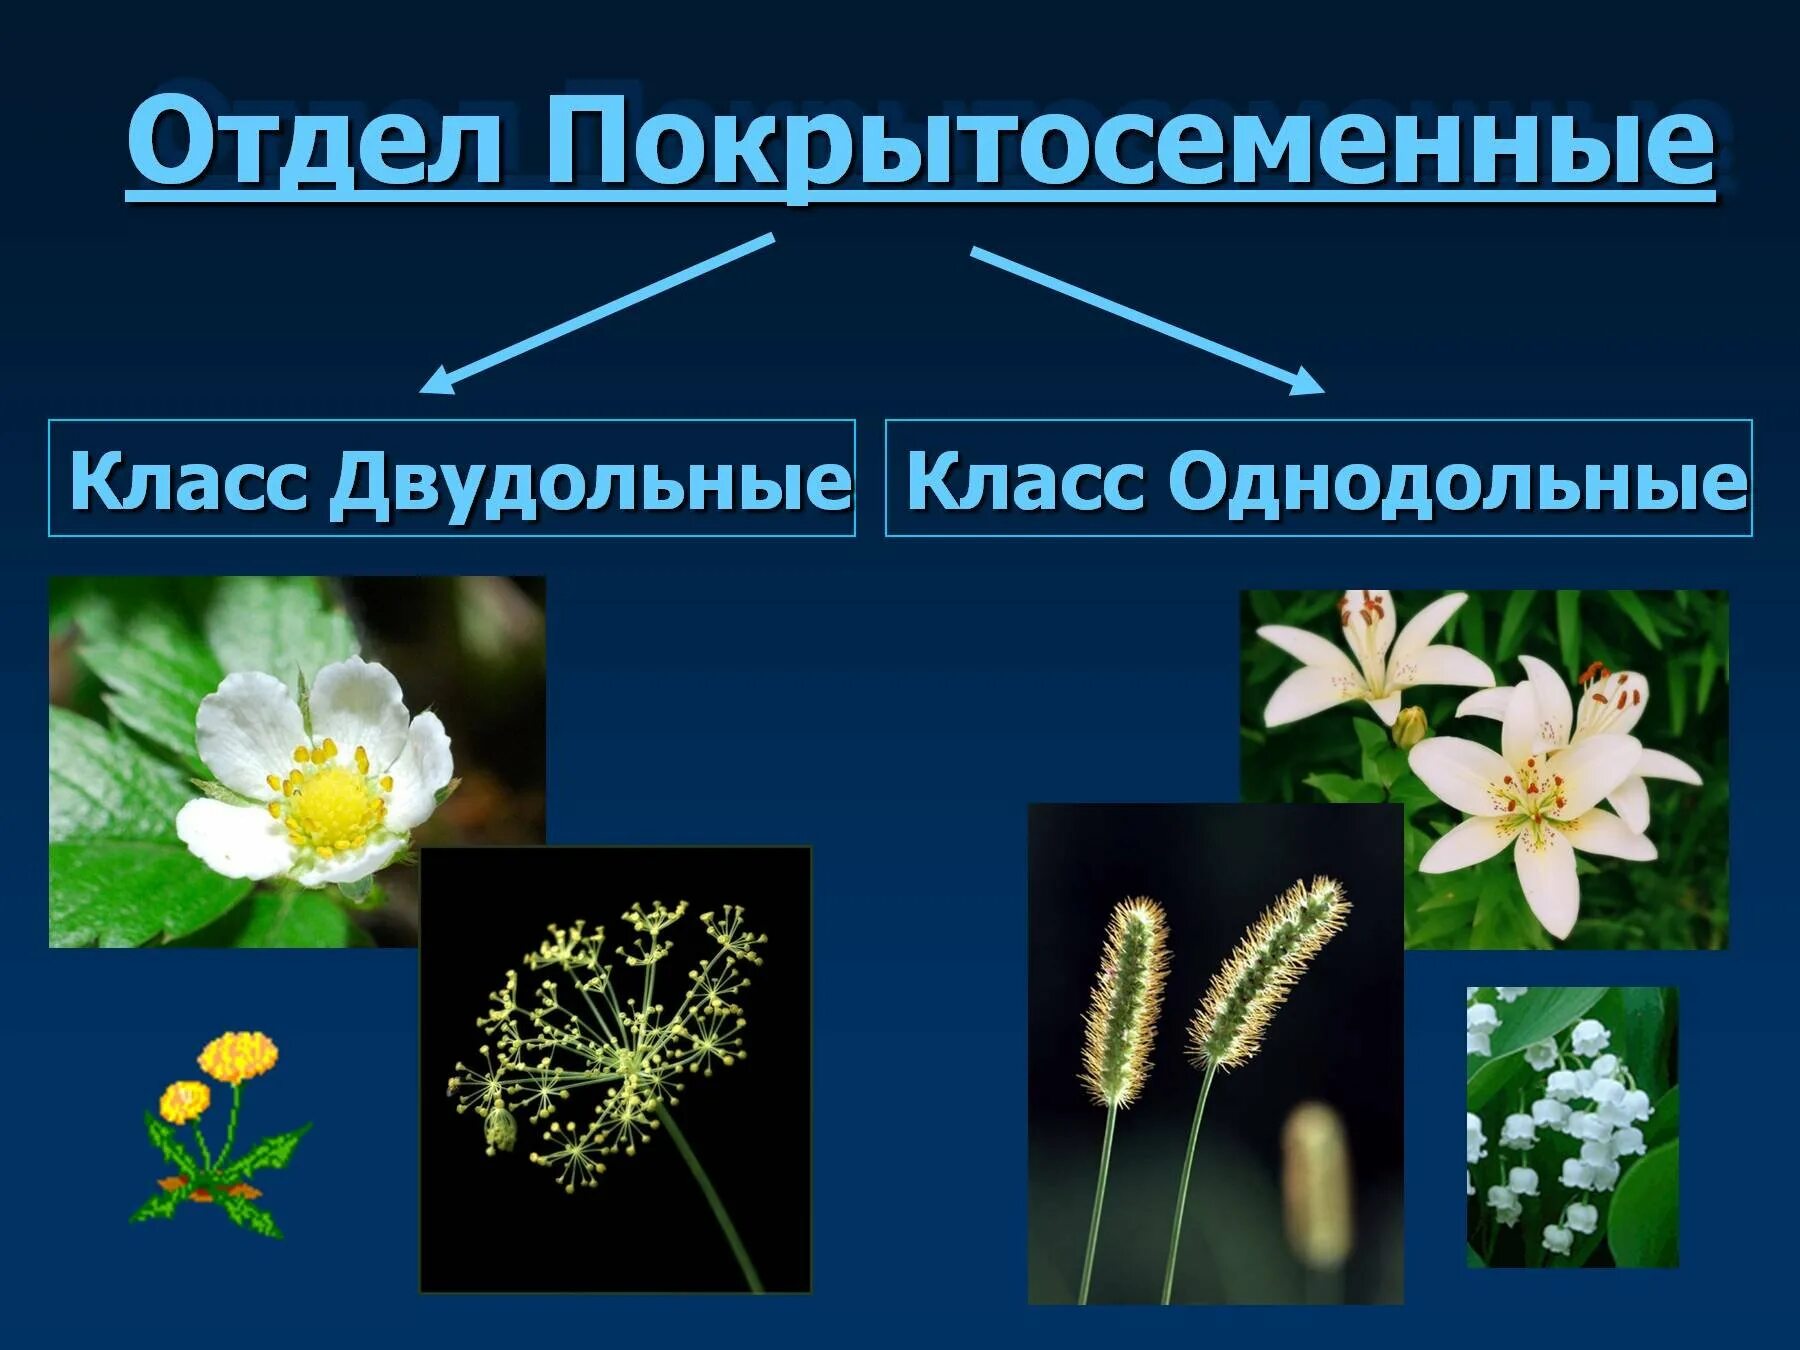 Покрытосеменные Однодольные и двудольные. Однодольные цветковые растения. Покрытосеменные растения класс Однодольные. Двудольные цветковые растения.